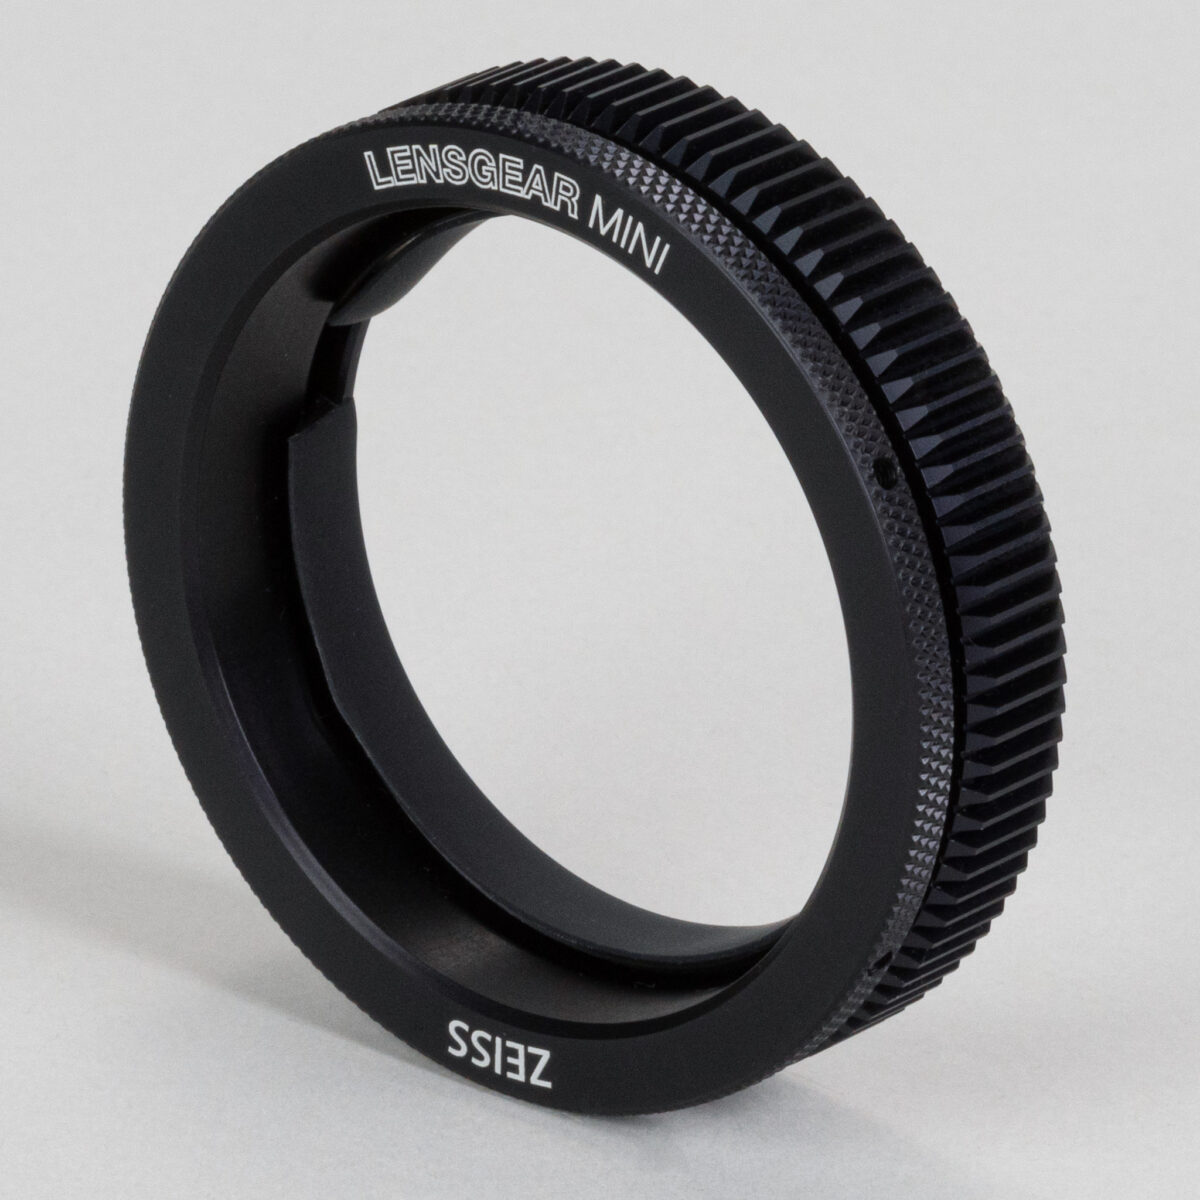 Zeiss Lens Gear Mini